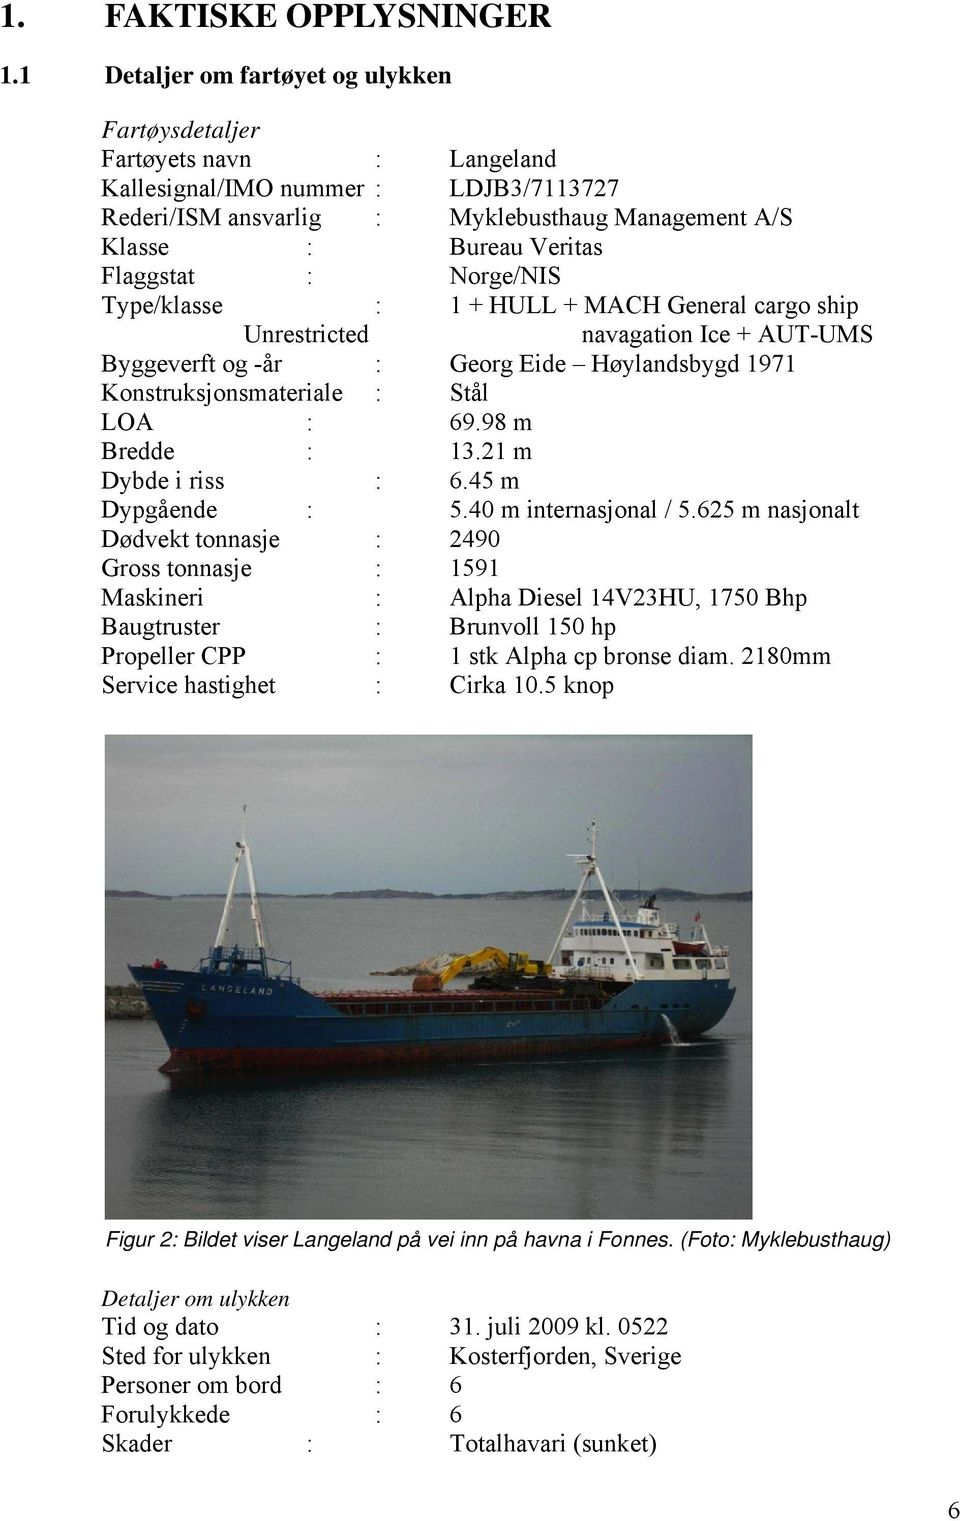 Flaggstat : Norge/NIS Type/klasse : 1 + HULL + MACH General cargo ship Unrestricted navagation Ice + AUT-UMS Byggeverft og -år : Georg Eide Høylandsbygd 1971 Konstruksjonsmateriale : Stål LOA : 69.